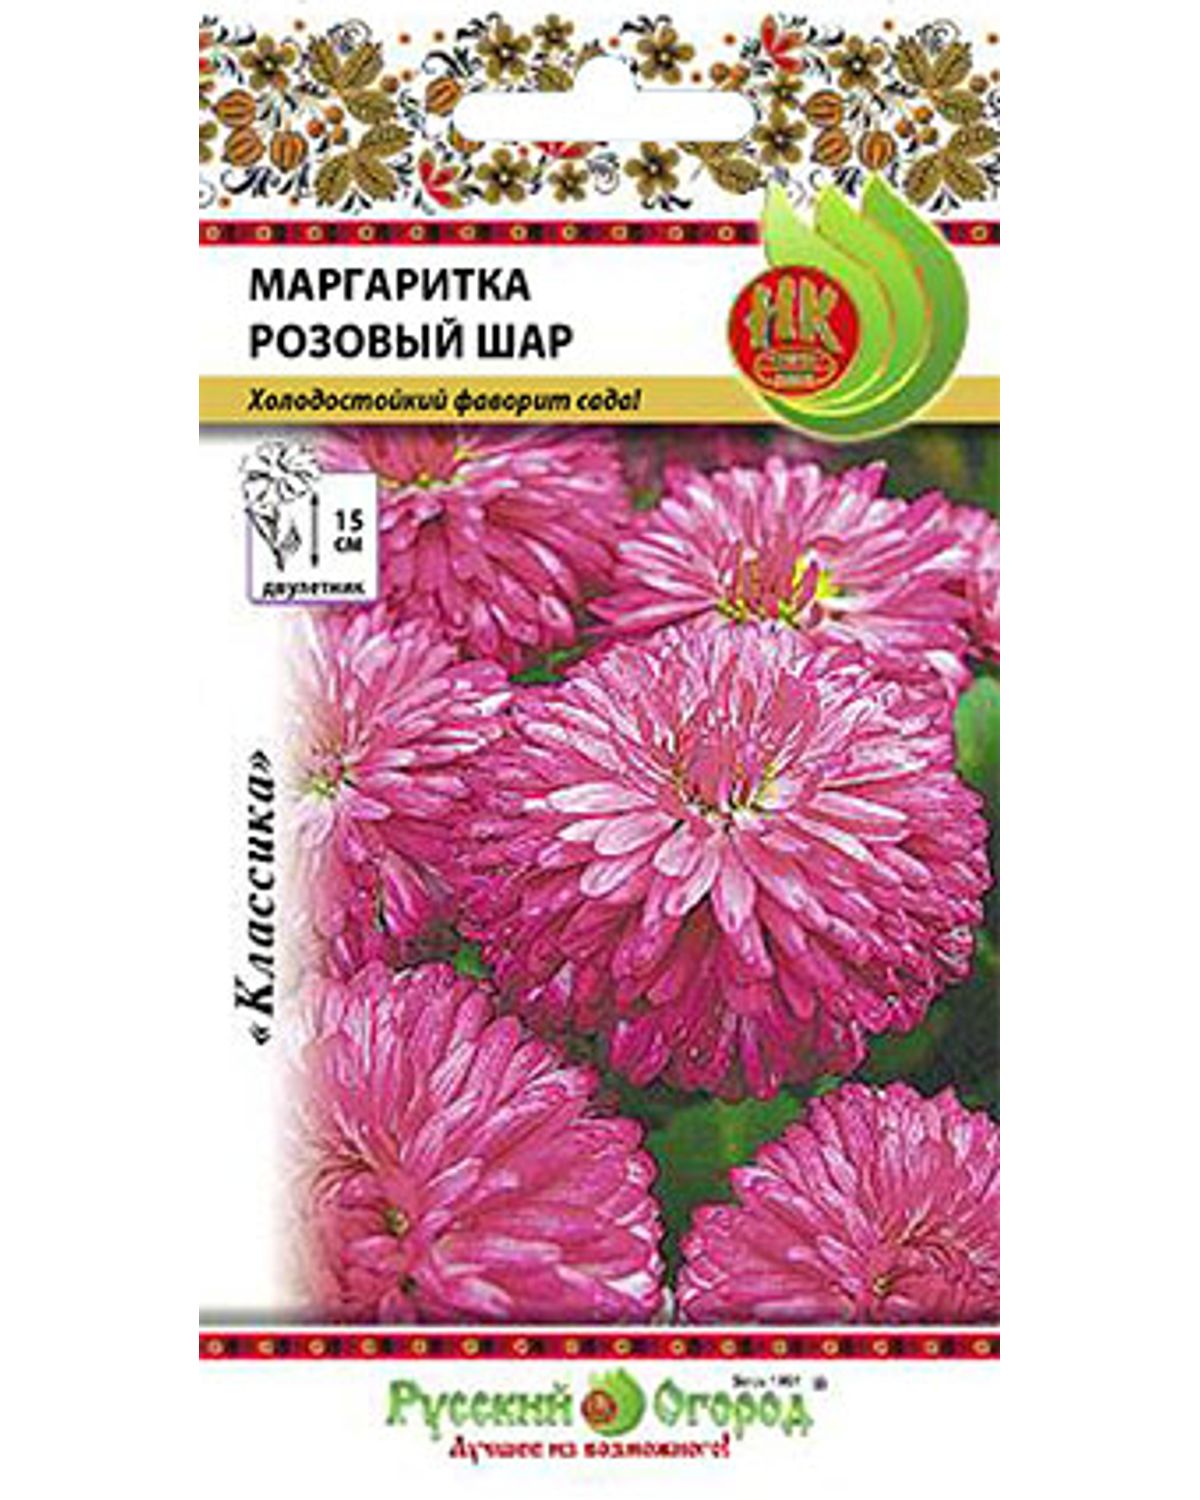 Семена маргаритка Русский огород Розовый шар 703175 1 уп. - отзывыпокупателей на Мегамаркет